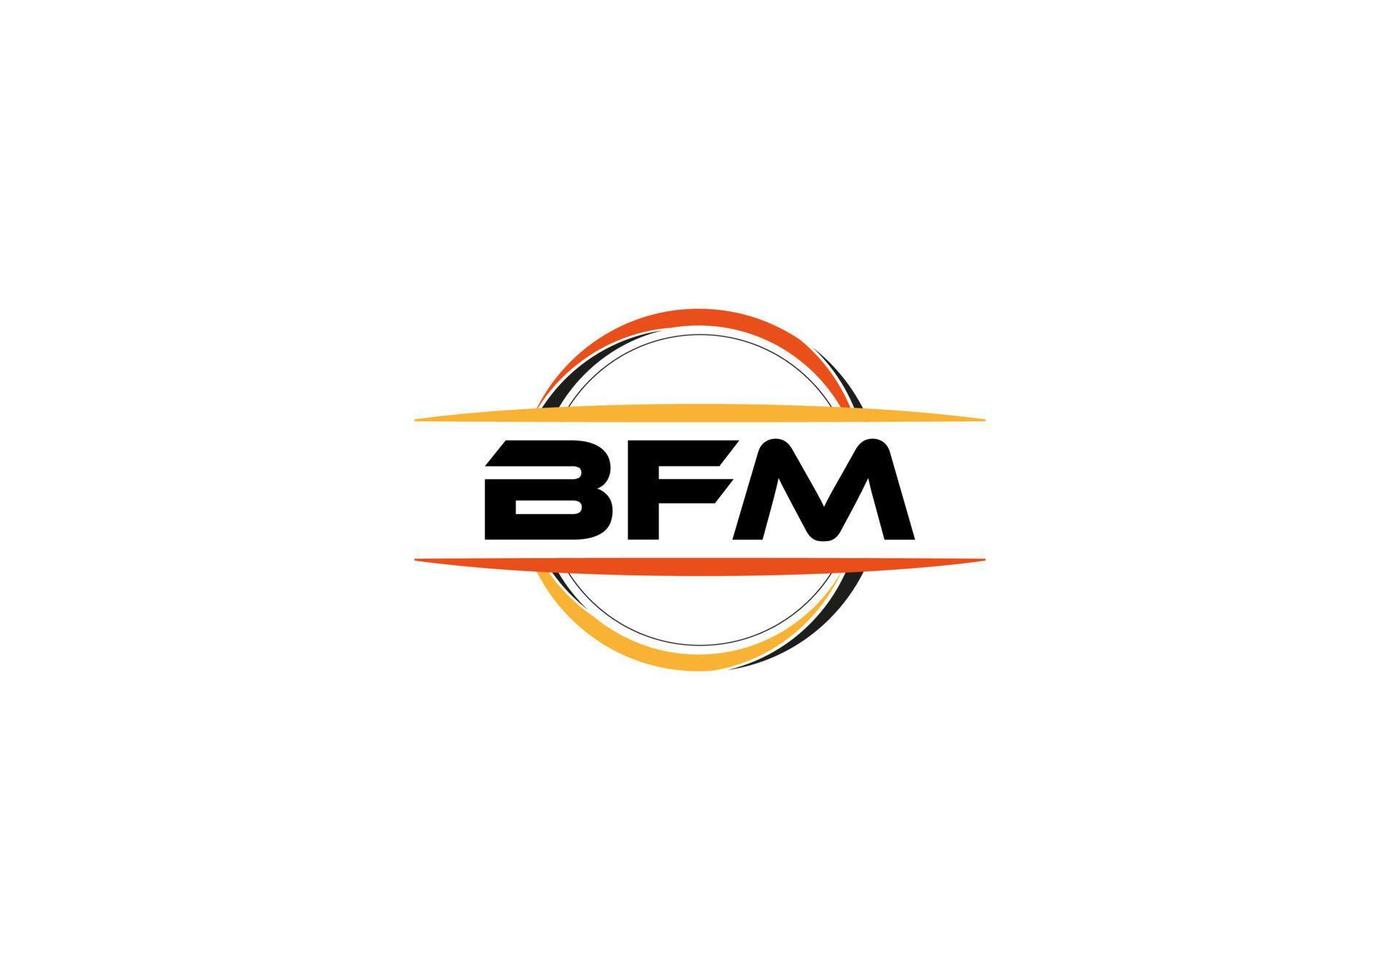 bfm lettre royalties ellipse forme logo. bfm brosse art logo. bfm logo pour une entreprise, entreprise, et commercial utiliser. vecteur